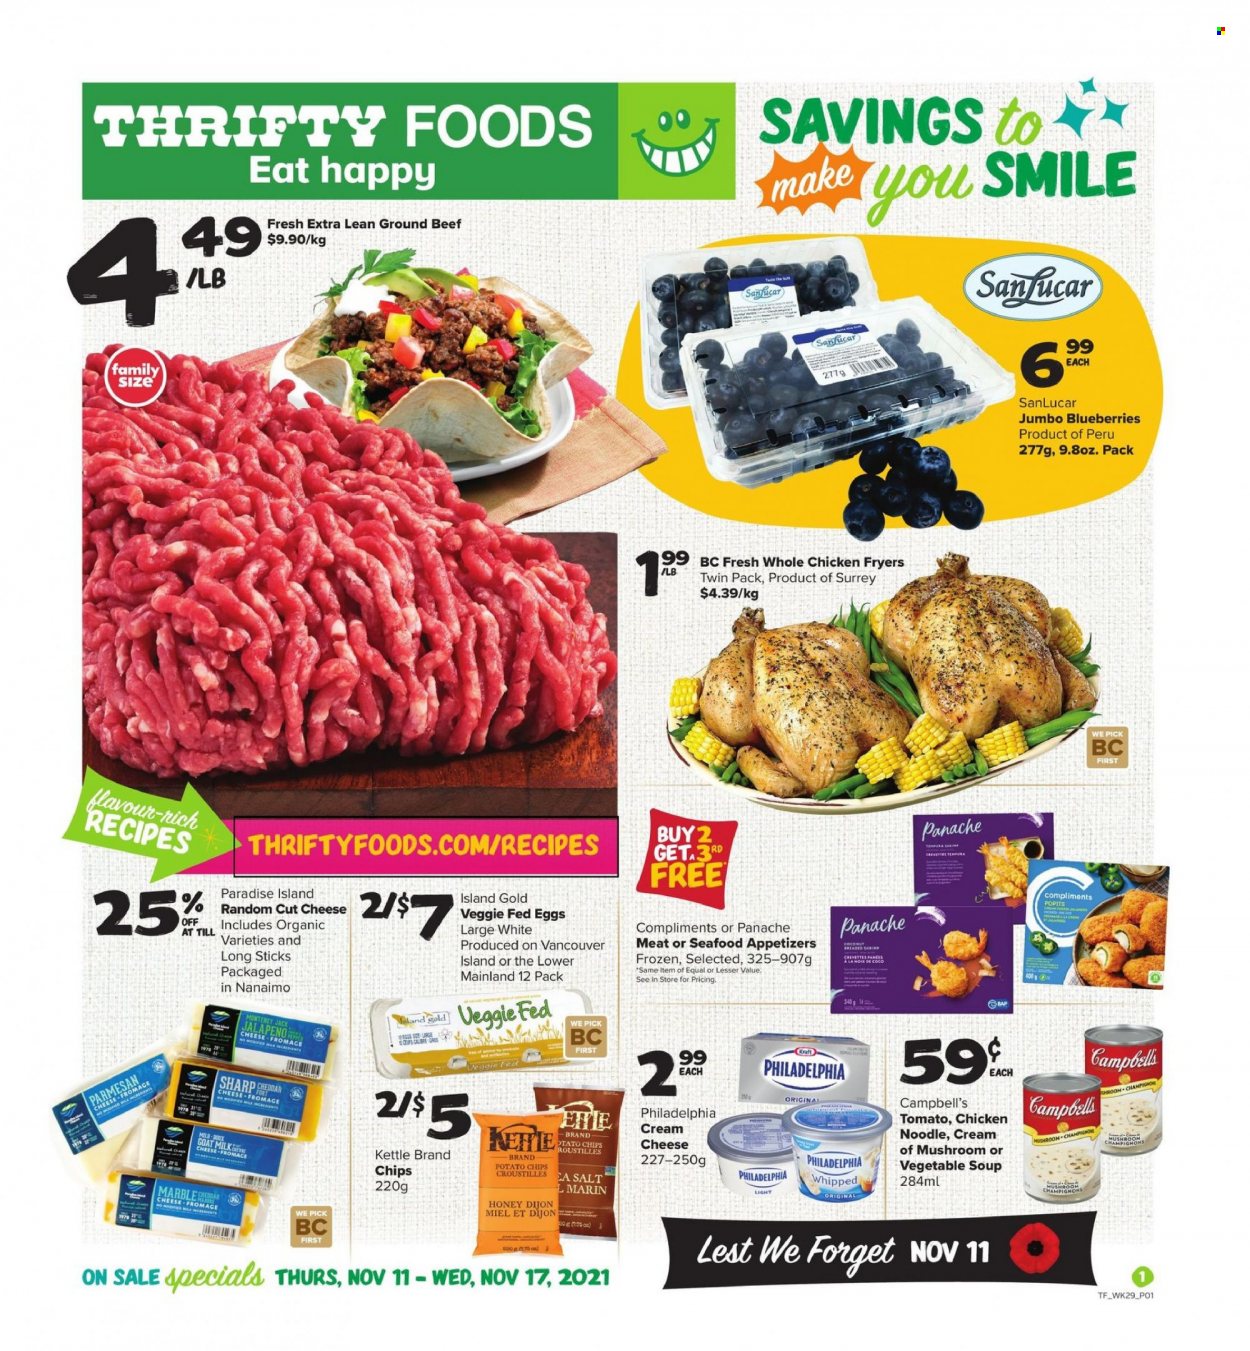 thumbnail - Circulaire Thrifty Foods - 11 Novembre 2021 - 17 Novembre 2021 - Produits soldés - champignon, crevettes, fromage, parmesan, chips, Philadelphia. Page 1.